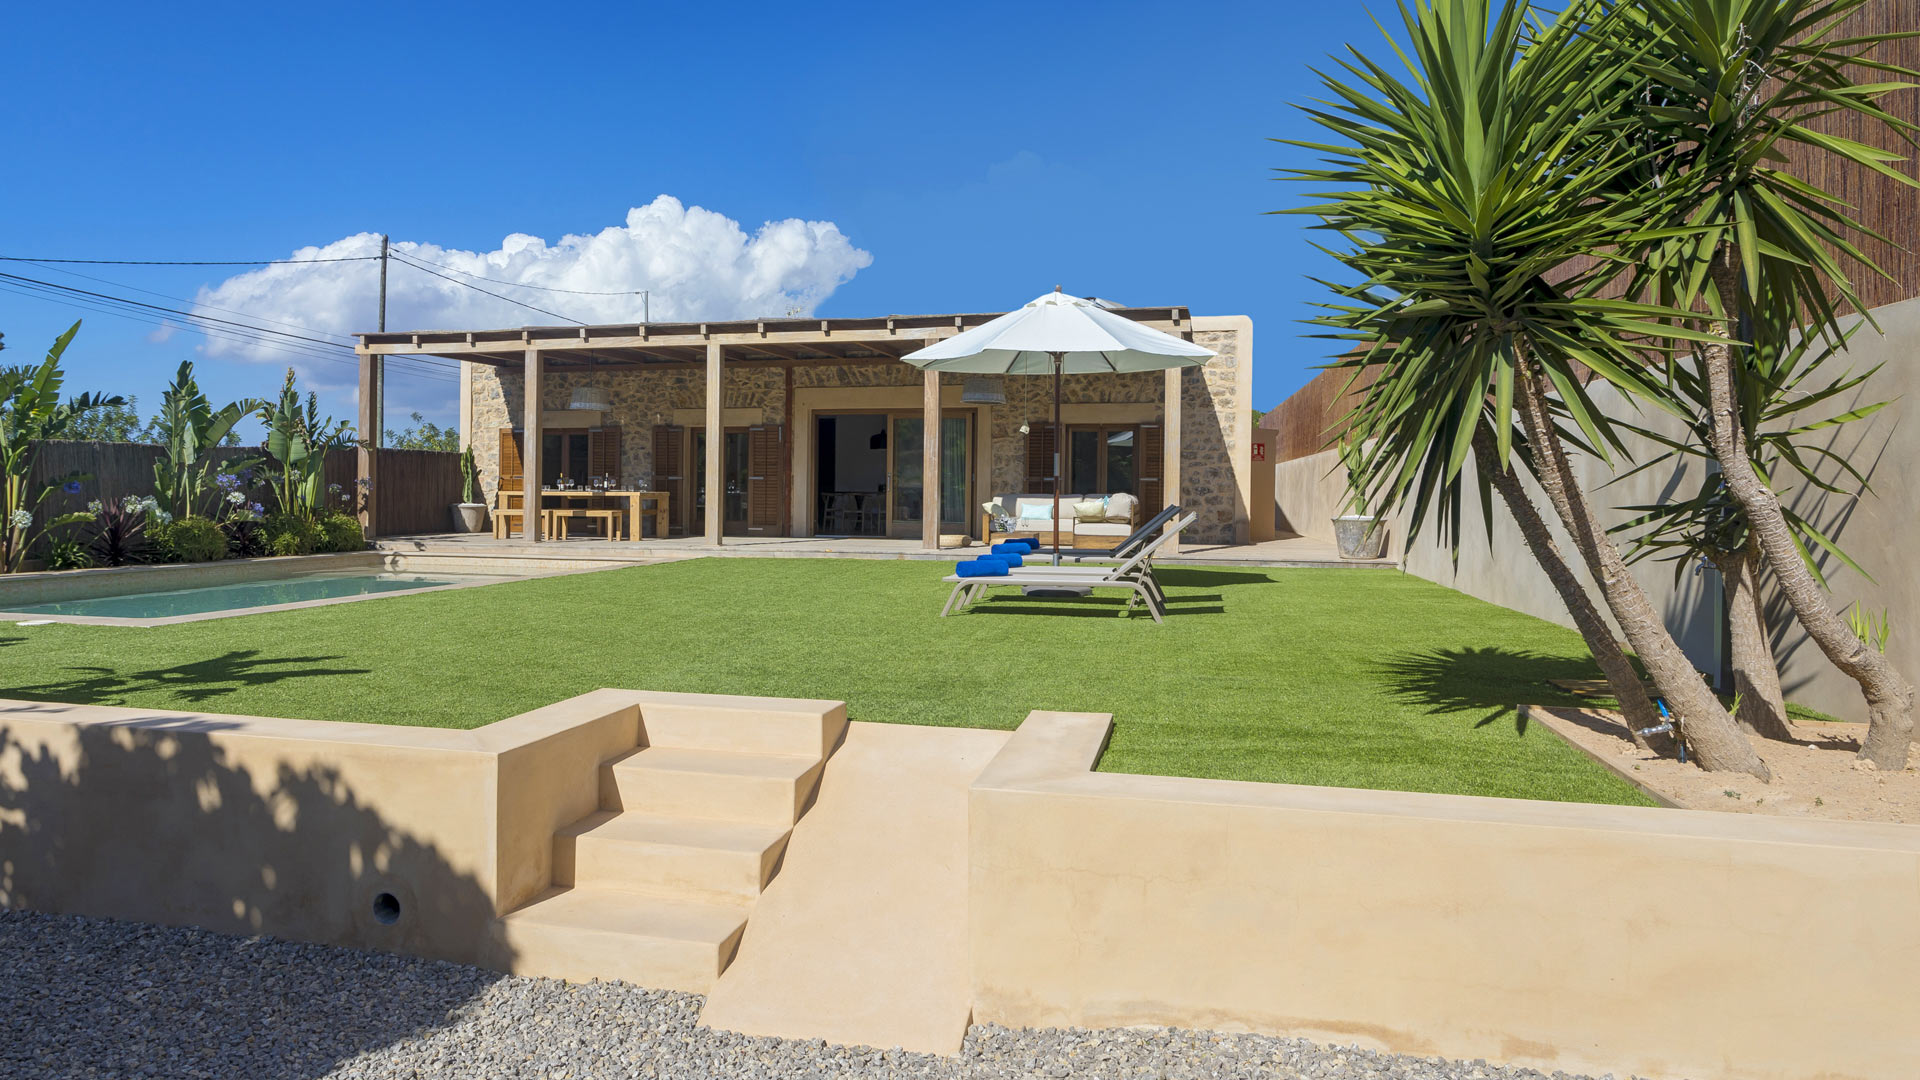 Villa Frigolar, Rental in Ibiza